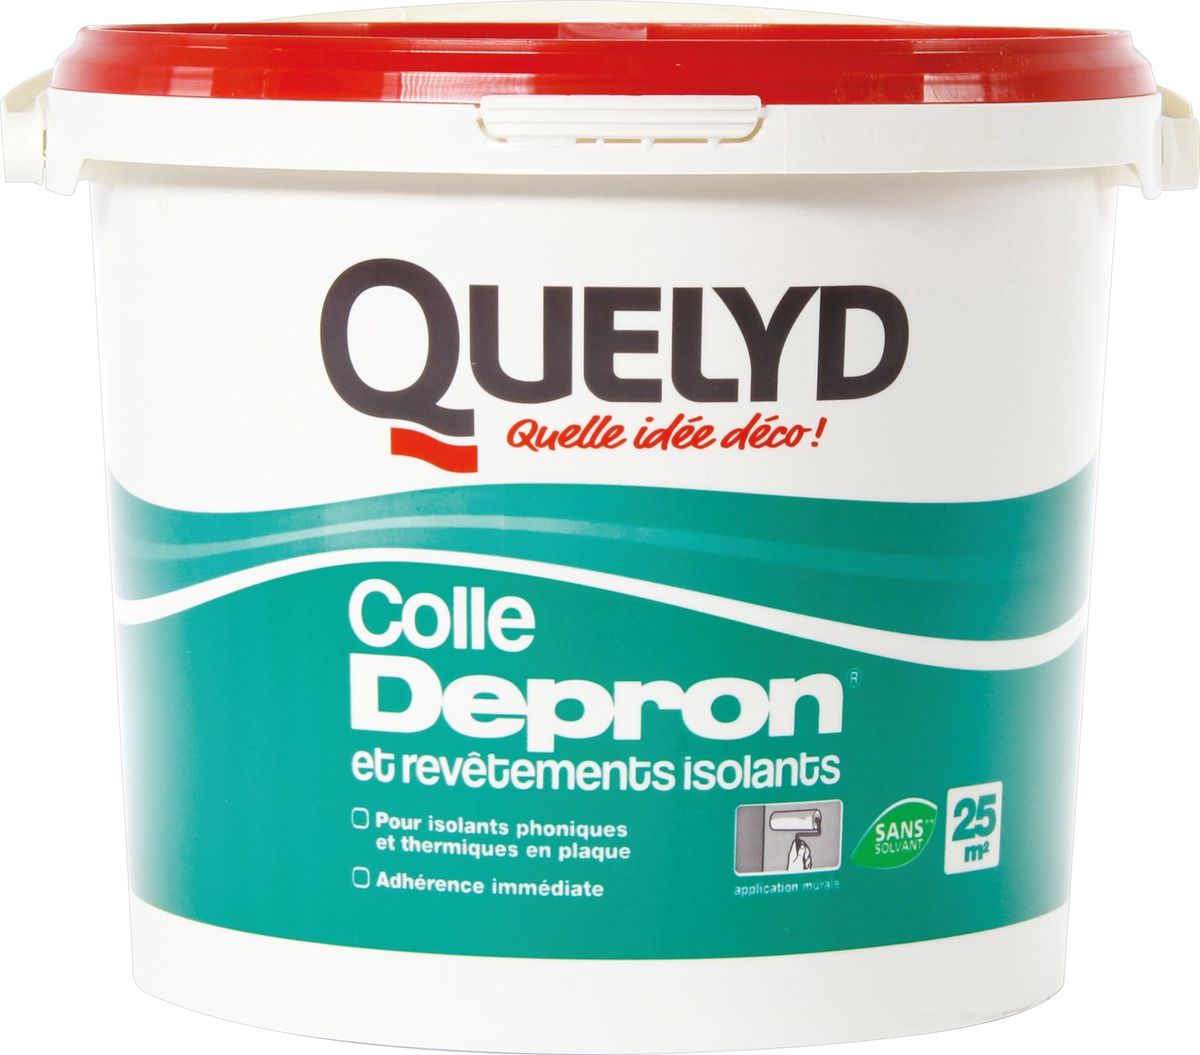 Colle pour isolant Depron Quelyd - Seau 6 kg